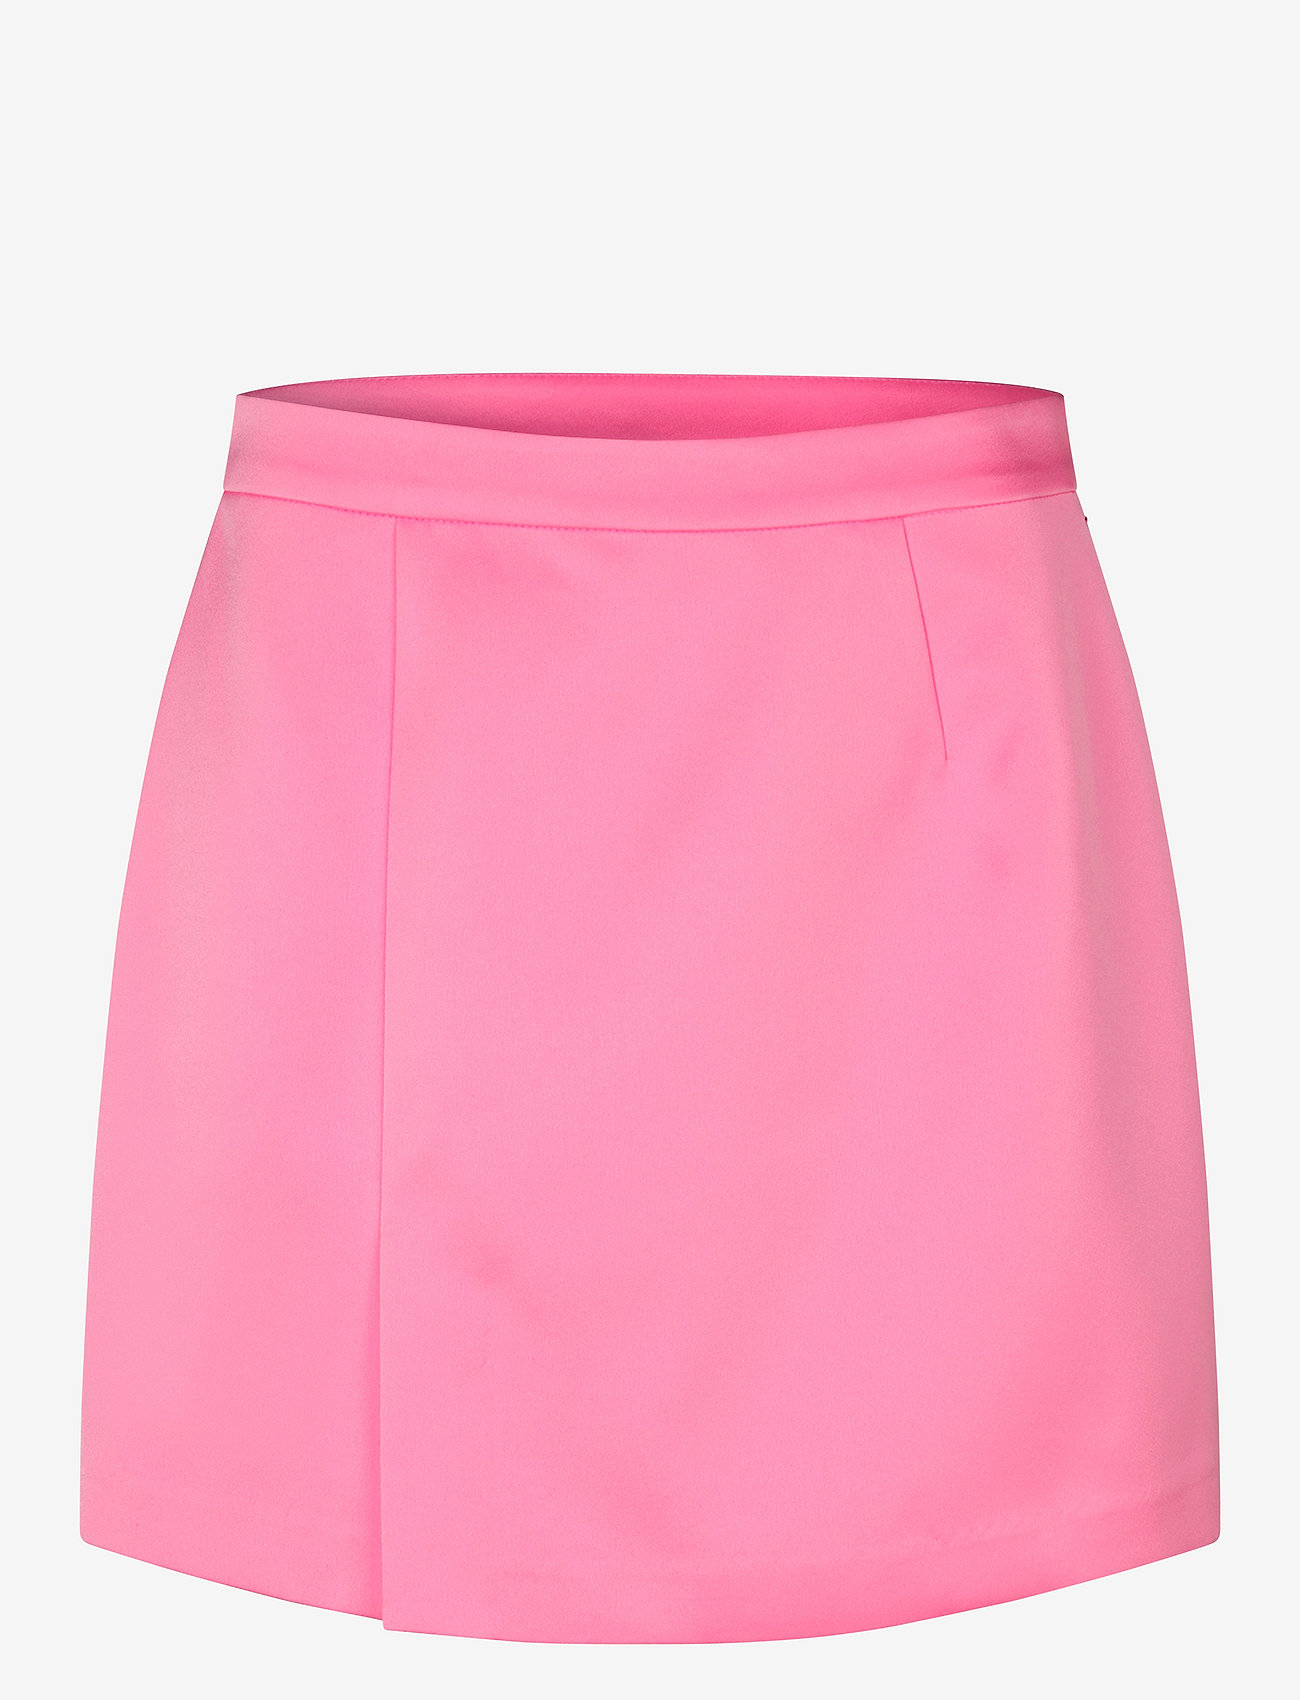 Cras - Samycras Skirt - kurze röcke - pink 933c - 0